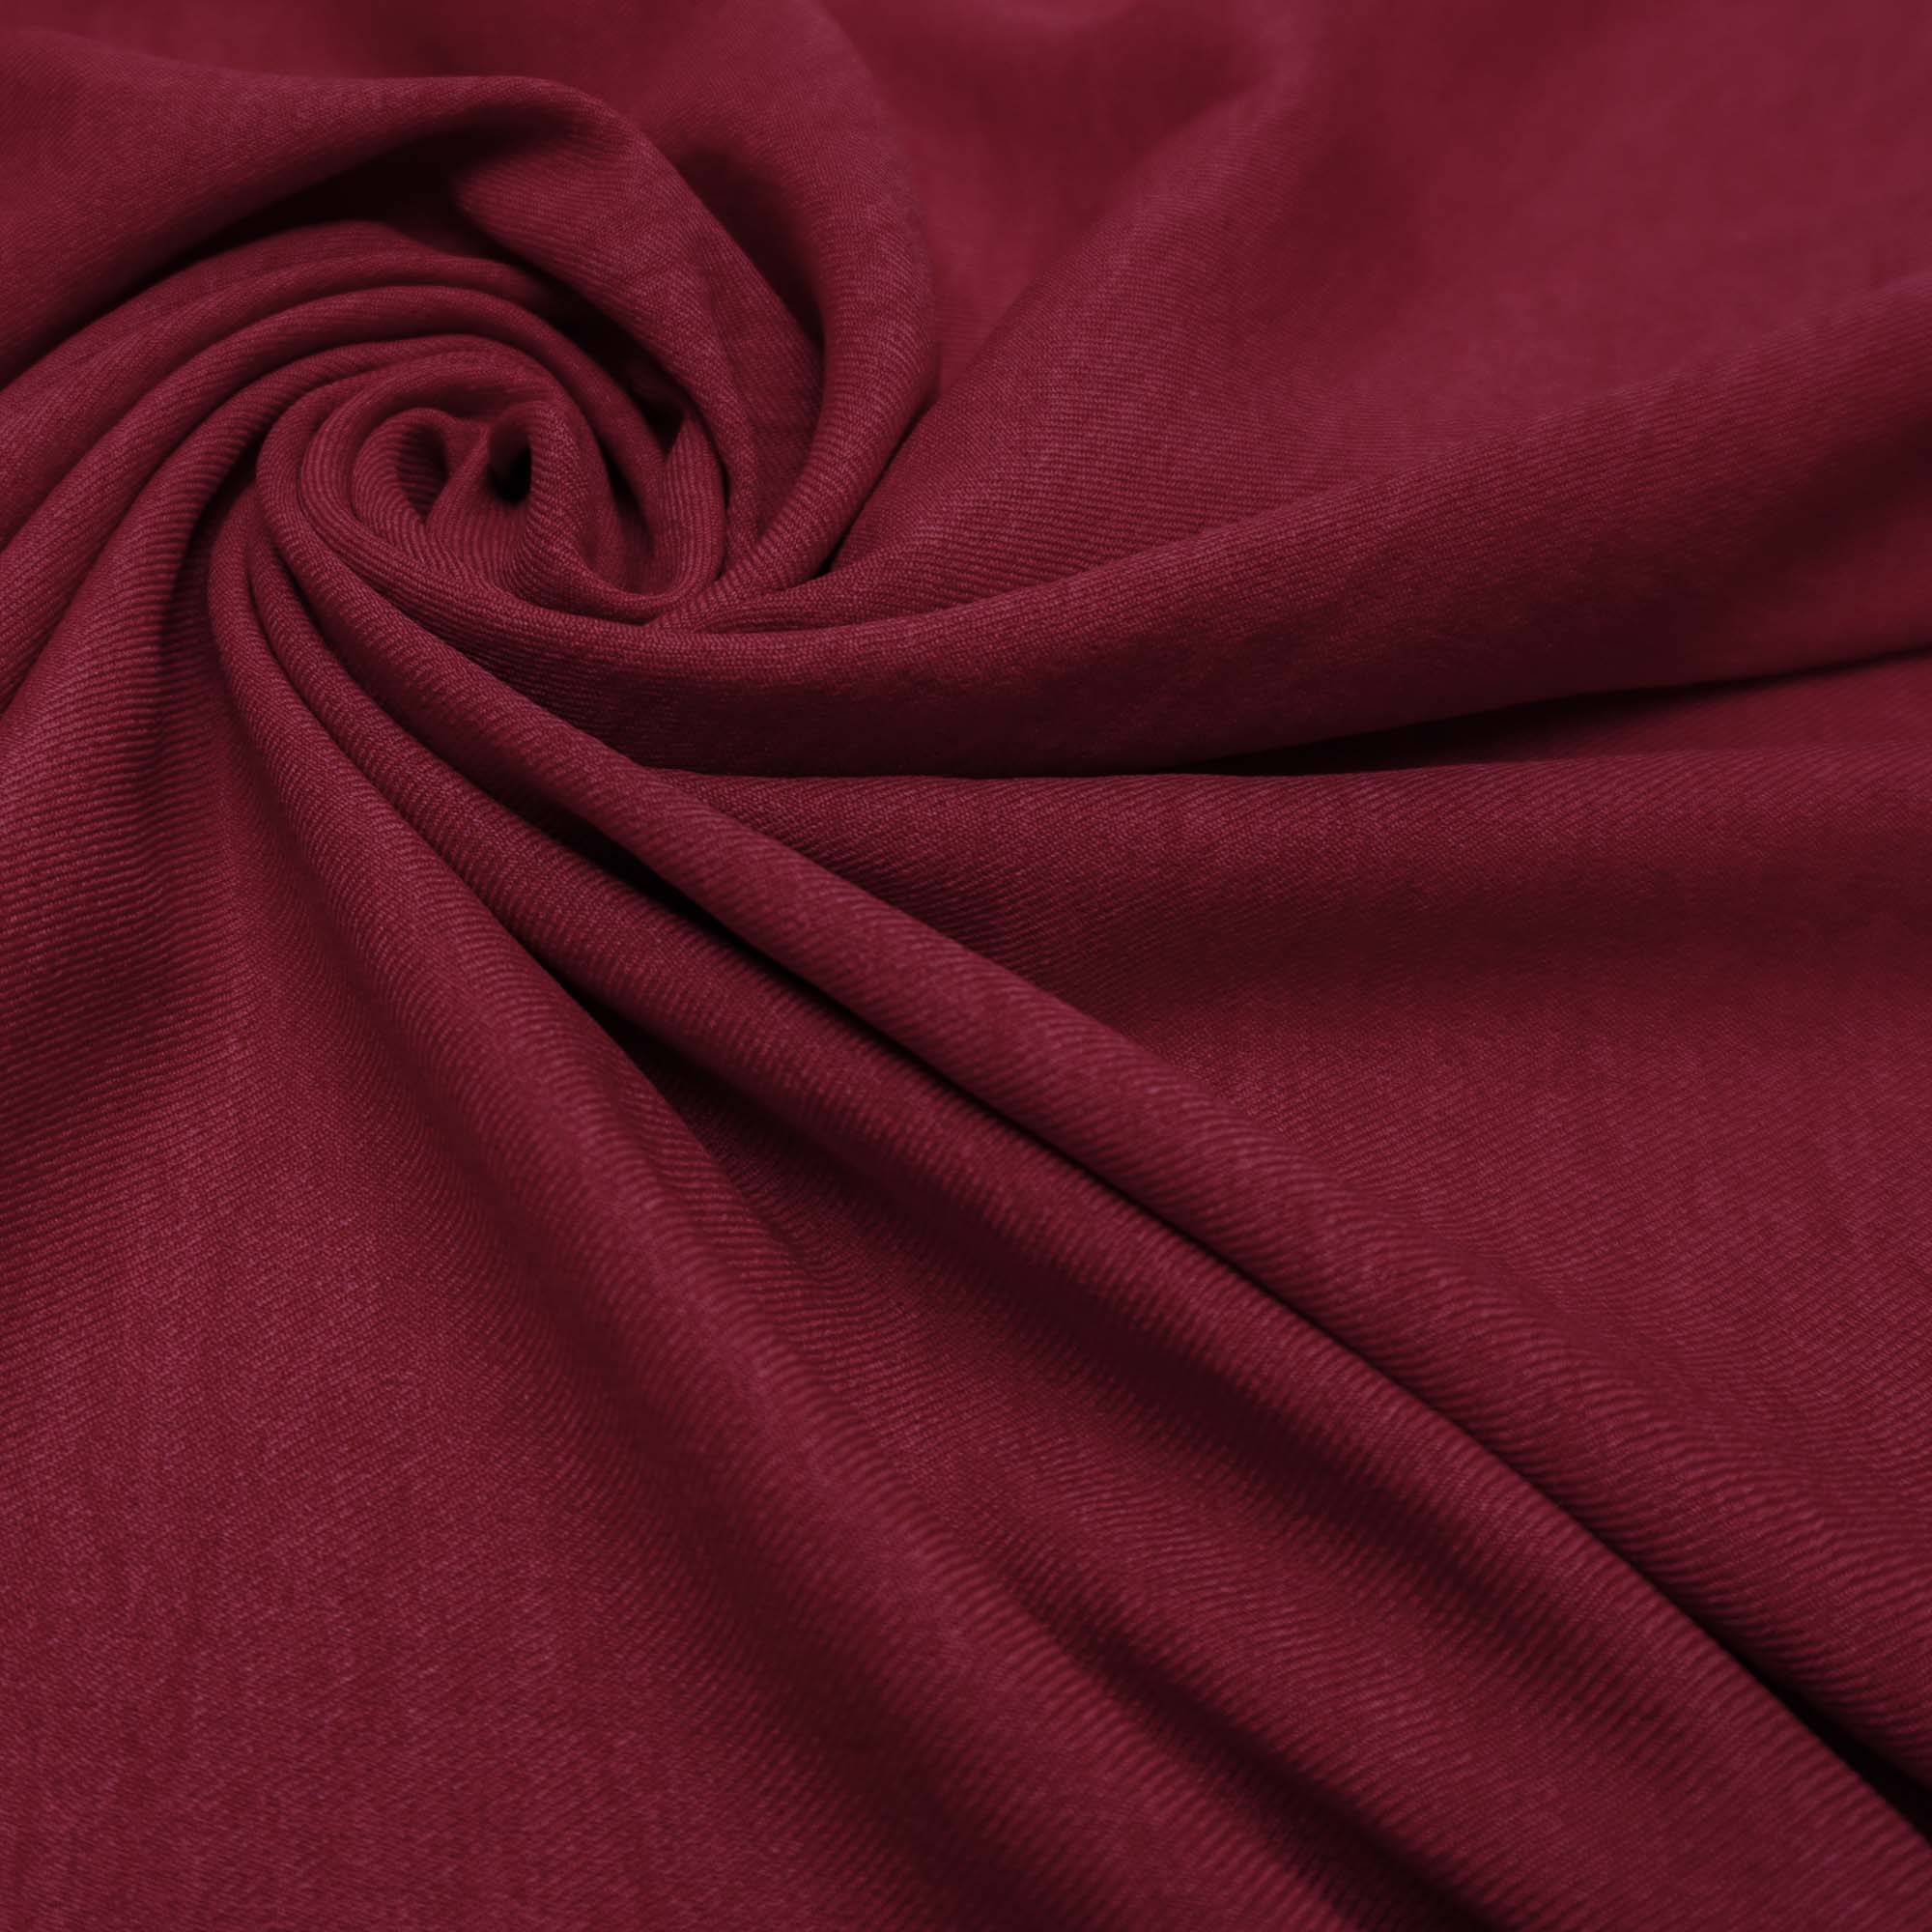 Tecido alfaiataria com textura de linho vermelho cereja